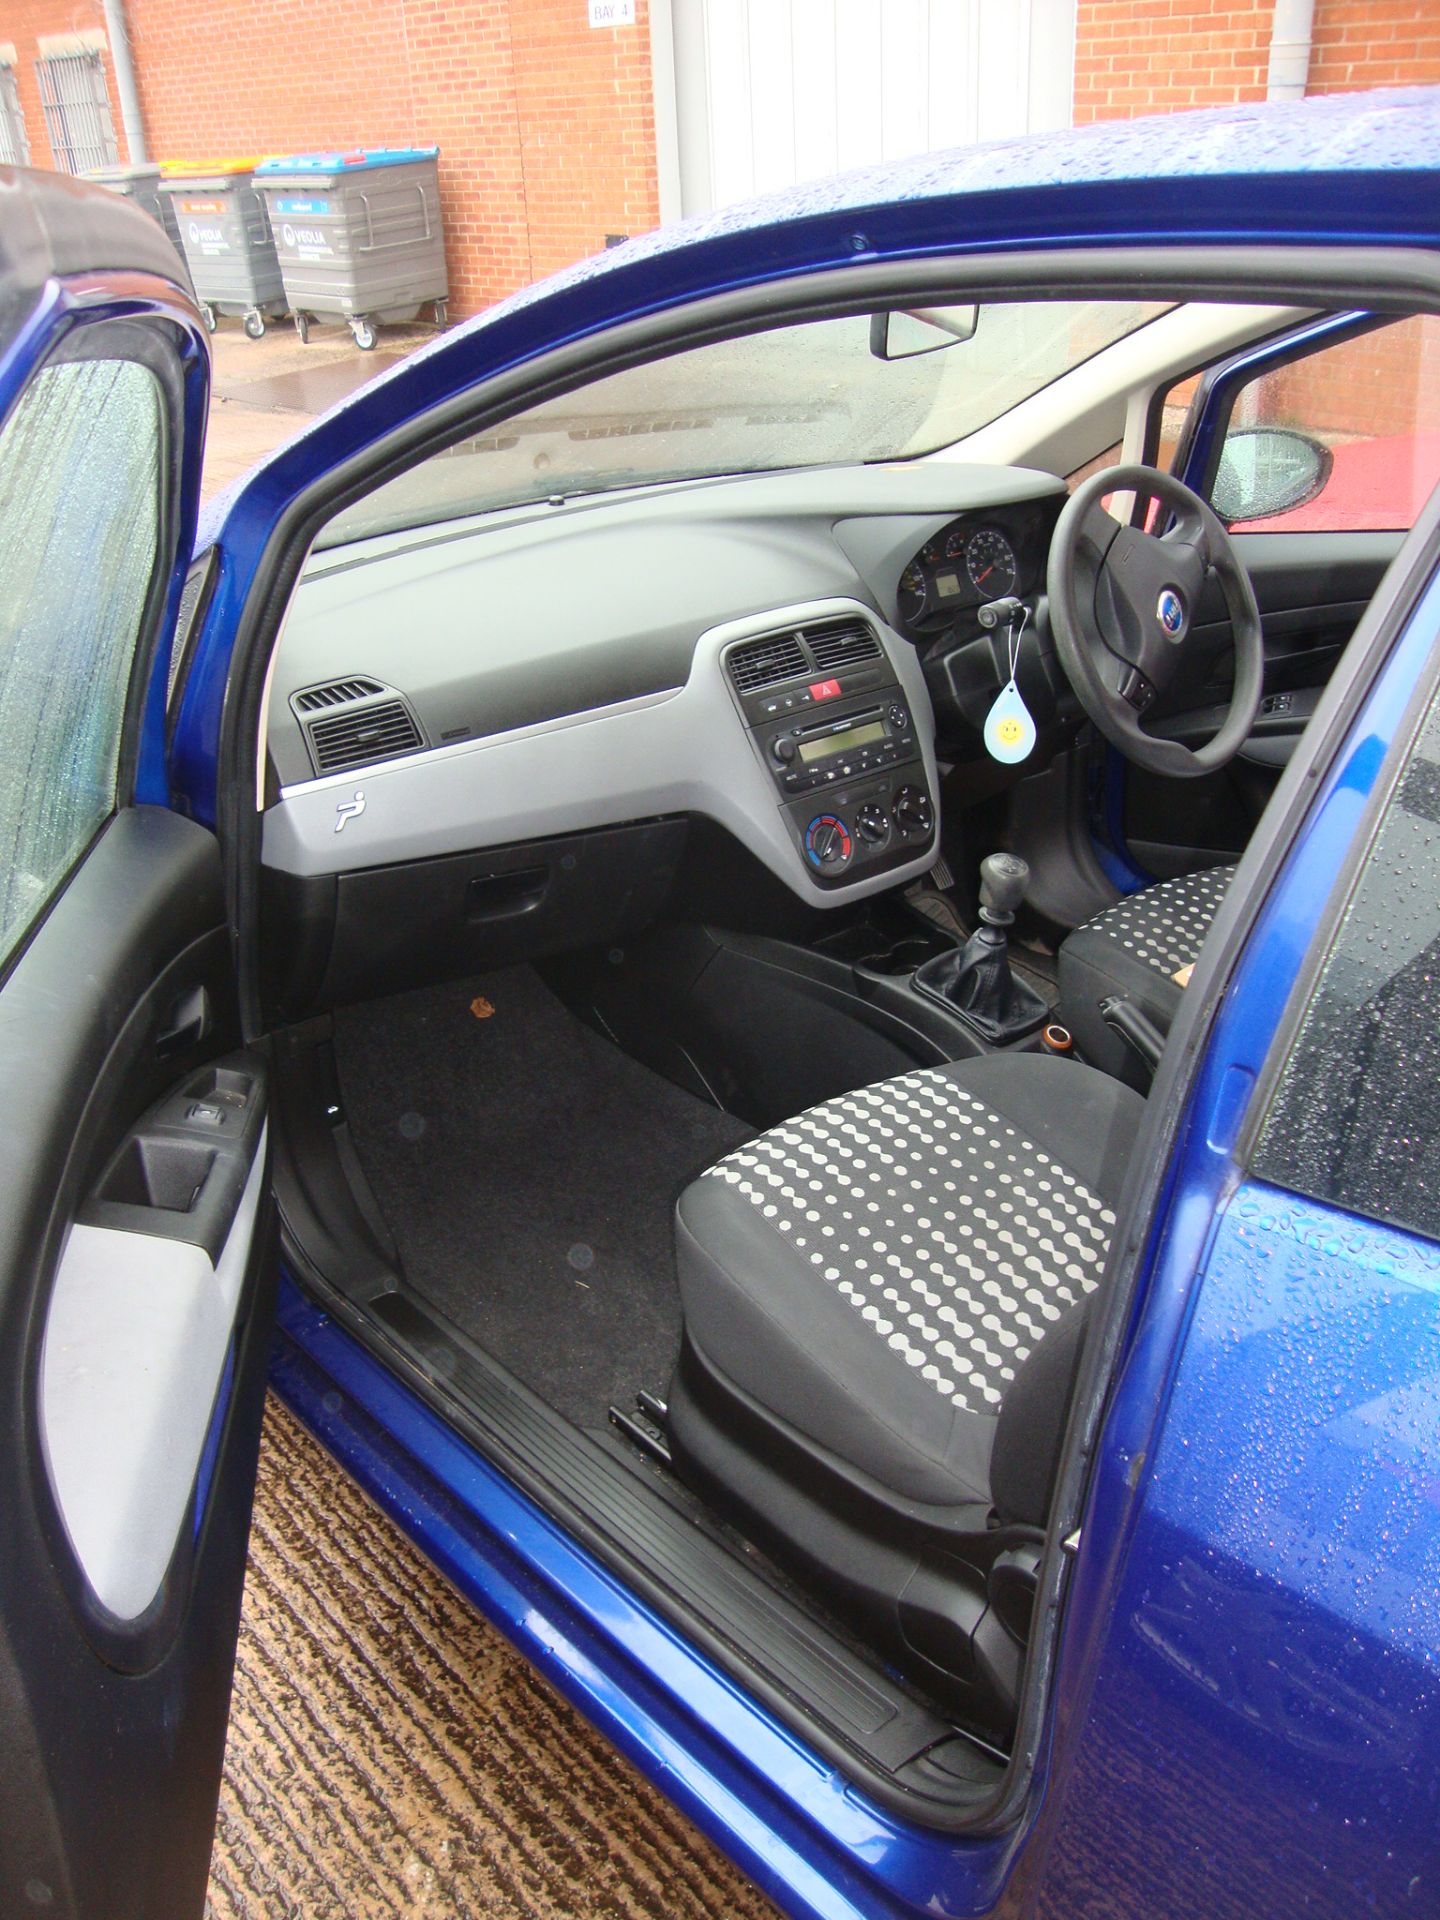 MF56 XHK Fiat Punto Active 3-door hatchback - Image 12 of 13